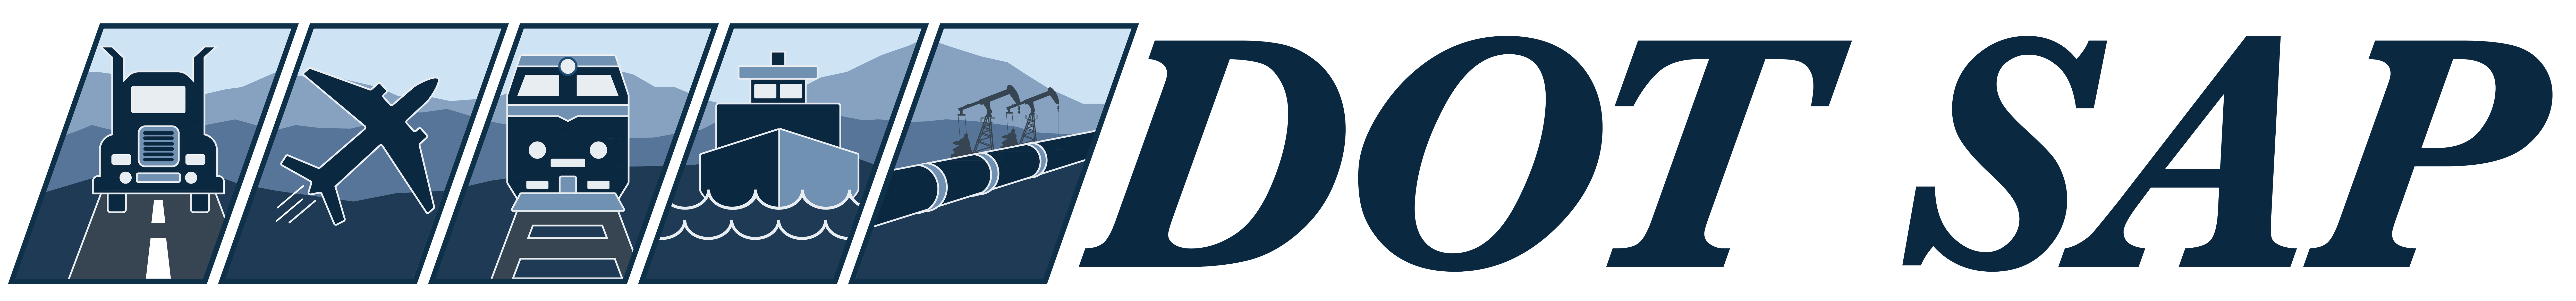 DOTSAP-Logo-01